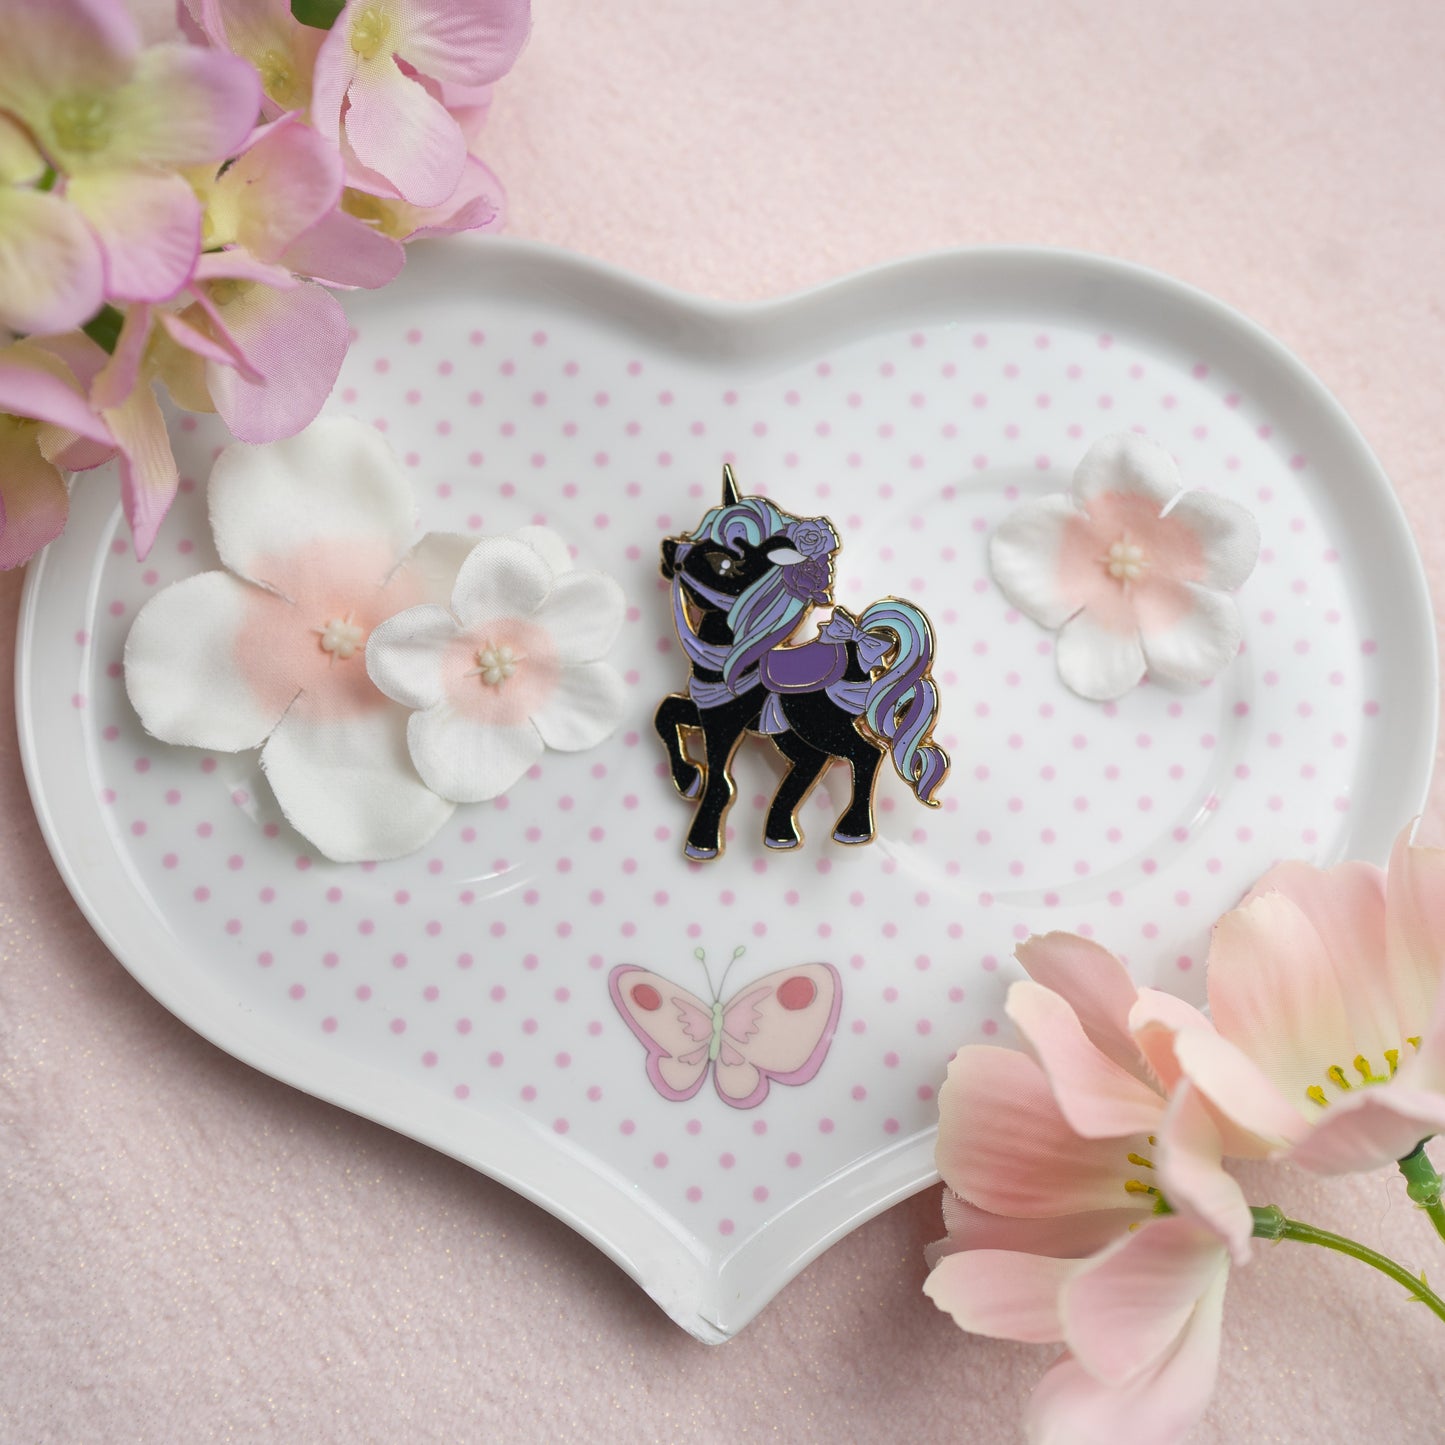 Unicorn Pin - Sweet Dream Carousel